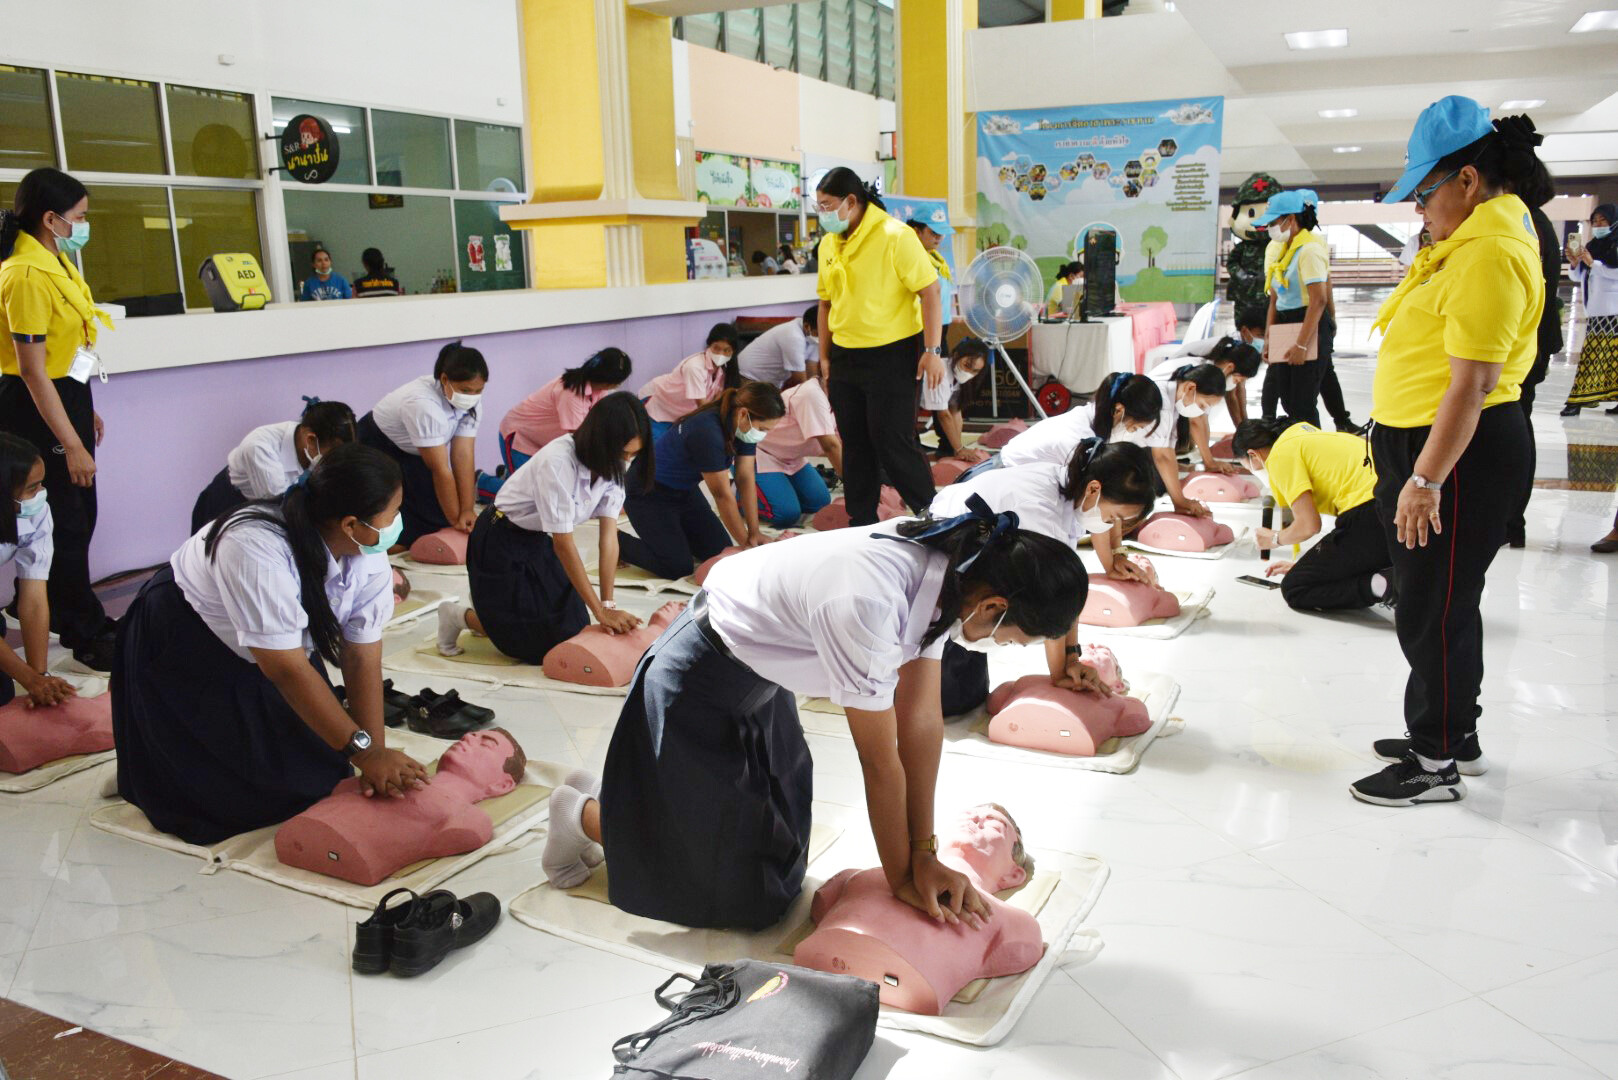 ม.วลัยลักษณ์ จัดงาน "วันเทคนิคการแพทย์ไทย ประจำปี 2566" พร้อมให้บริการตรวจทางเทคนิคการแพทย์เบื้องต้นแก่นักศึกษาและประชาชน